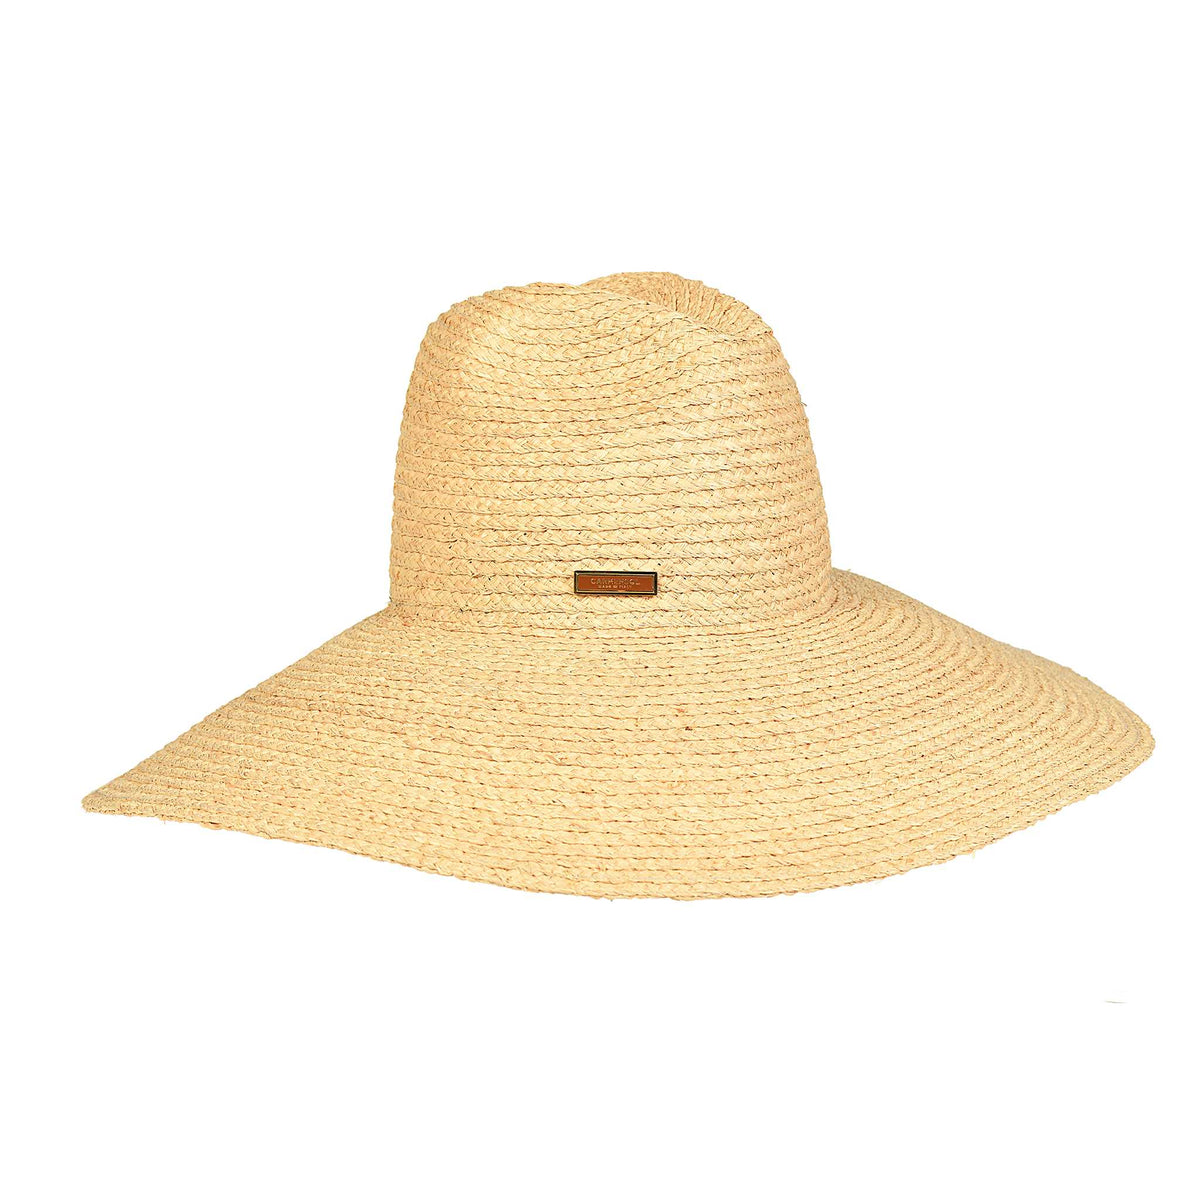 Oversized Carmen Sol Frances summer hat in color nude